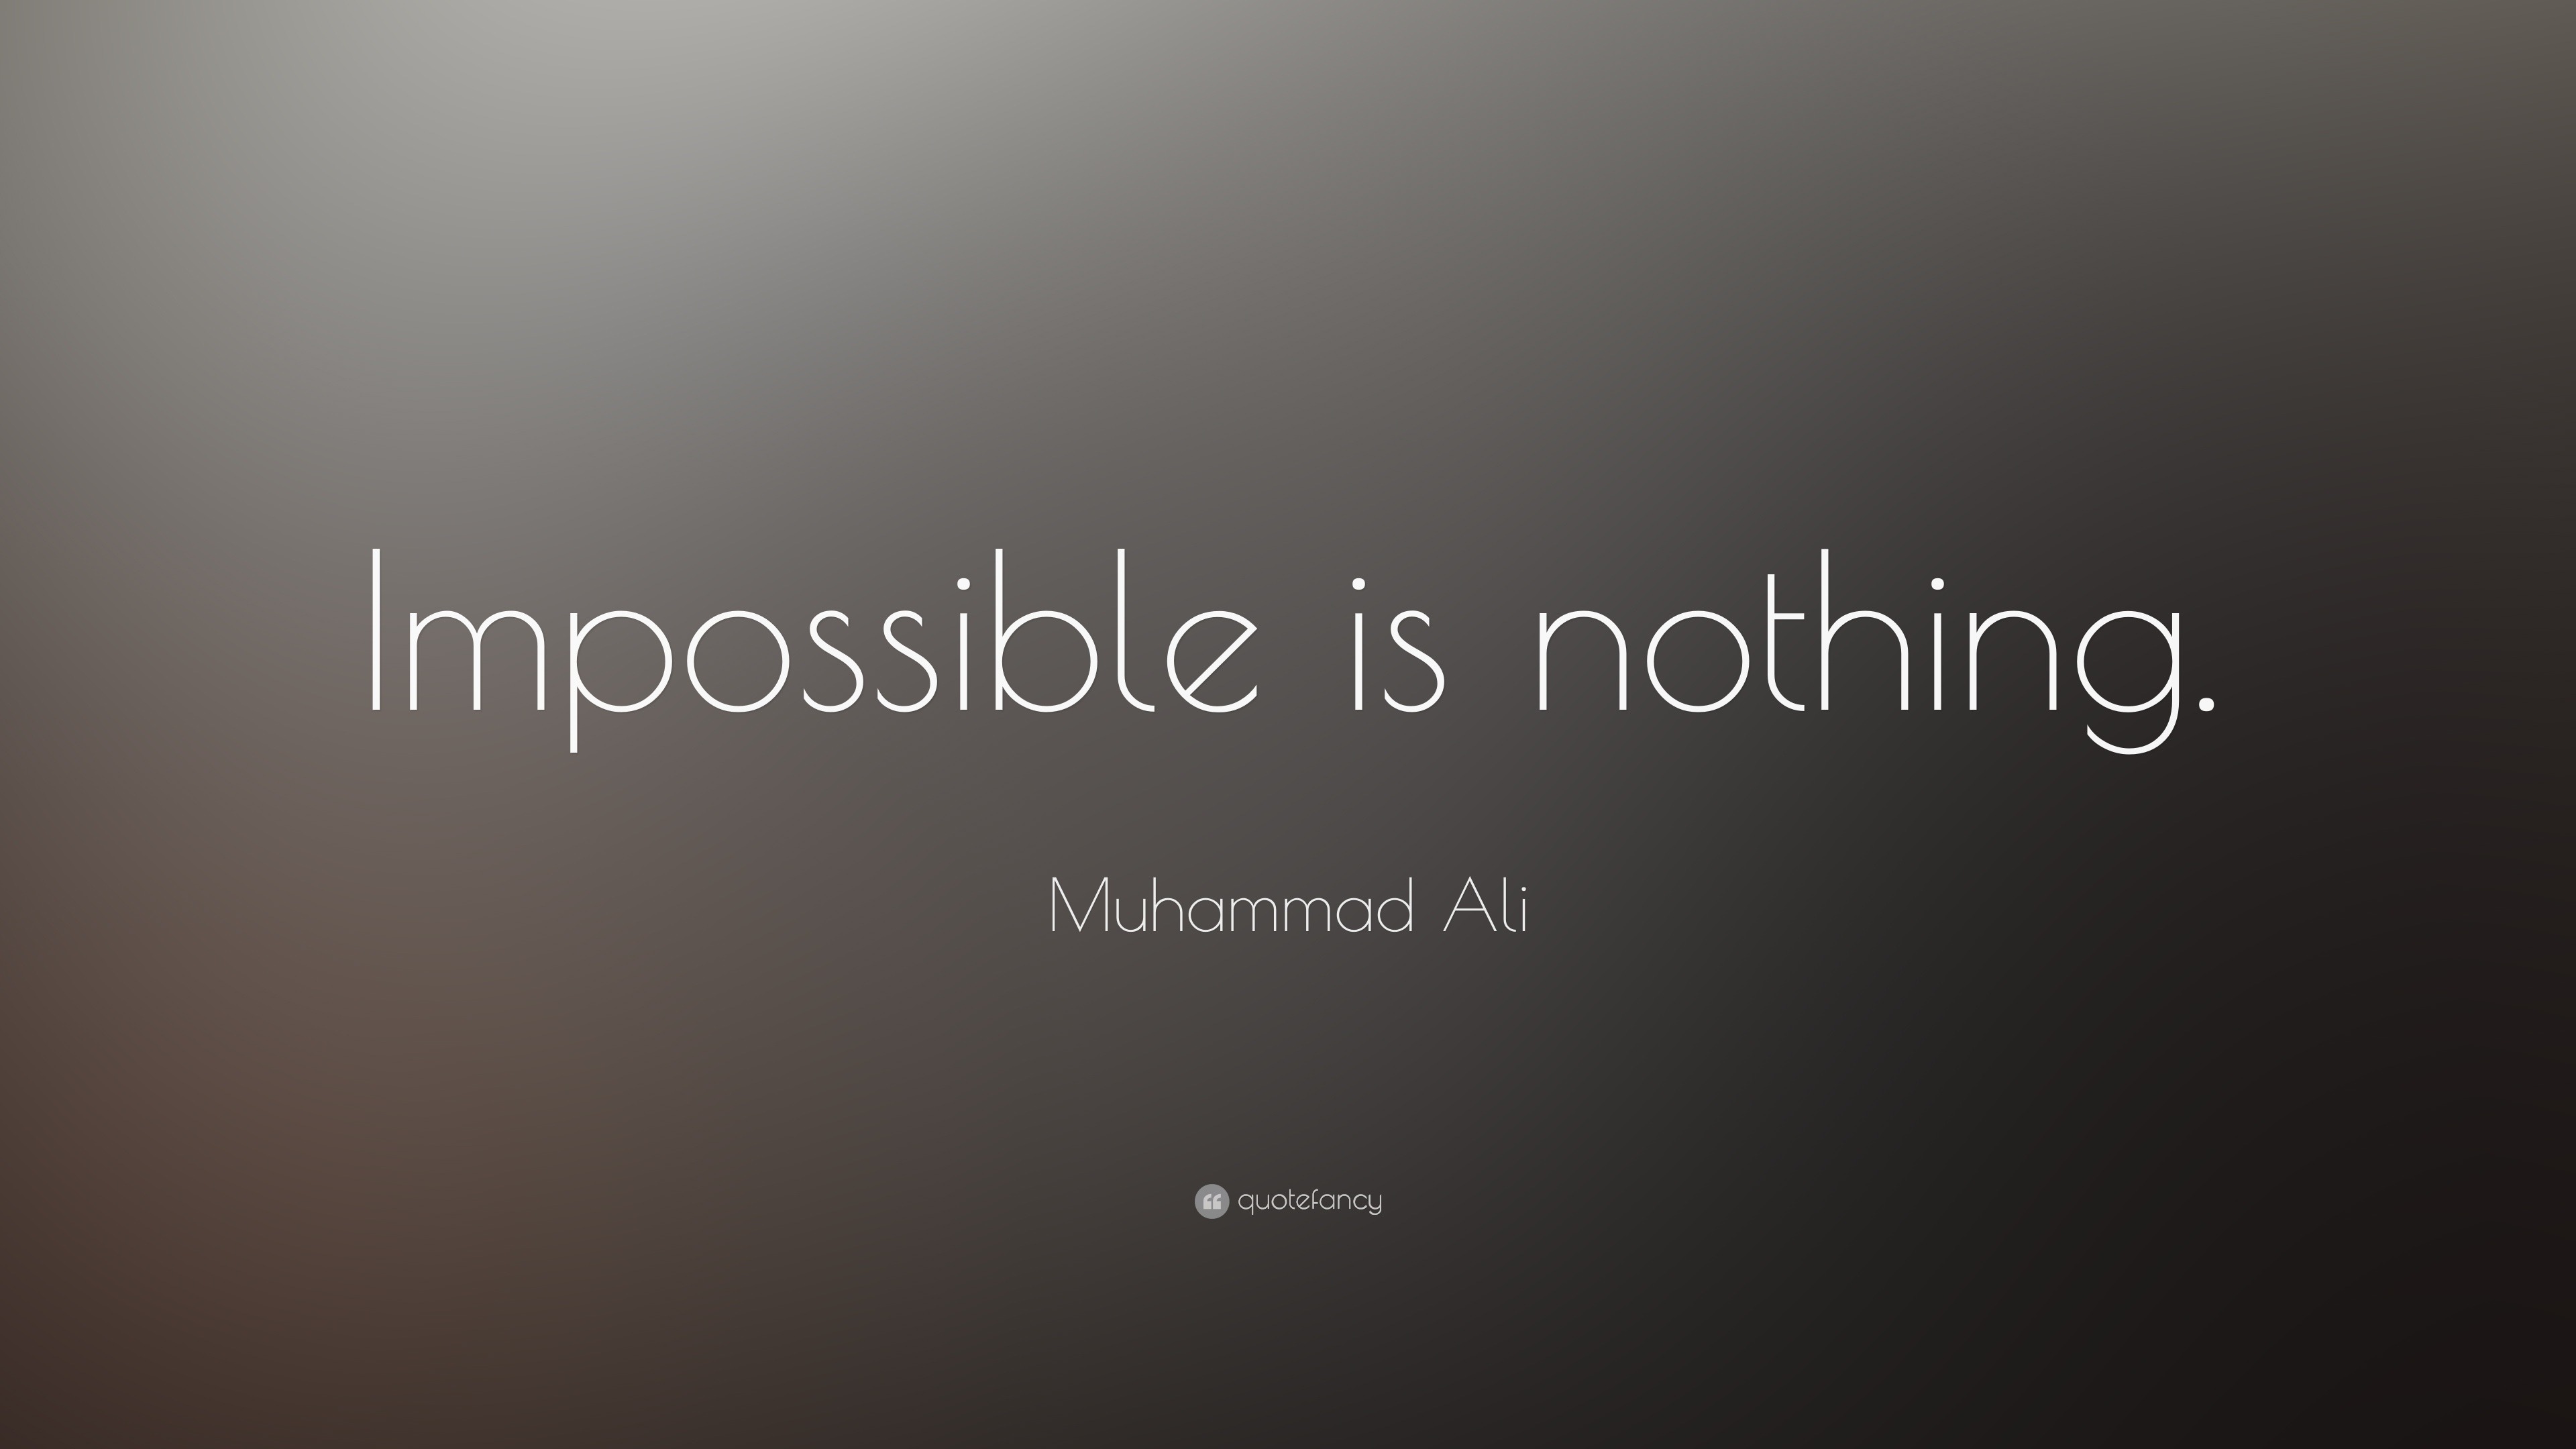 Muhammad Ali Quotes Impossible. QuotesGram